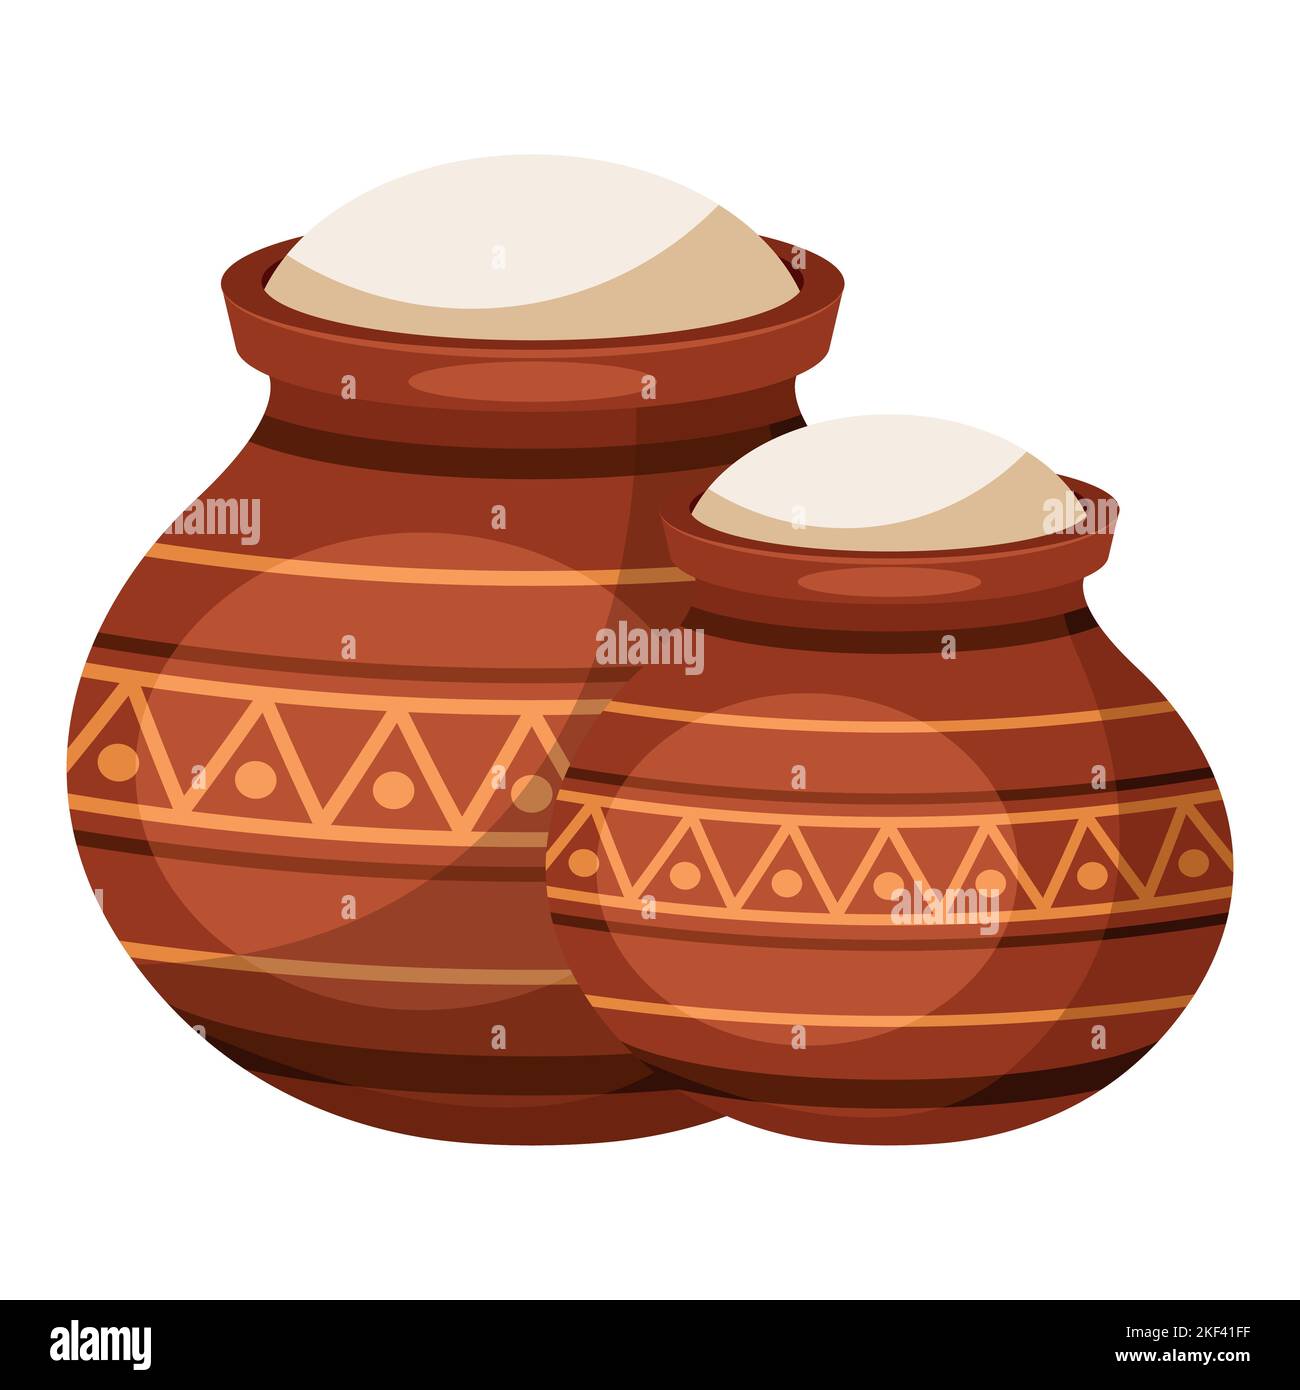 Conception de pots en argile traditionnels de dessin animé pour la célébration heureuse du festival des récoltes de Pongal India Illustration de Vecteur